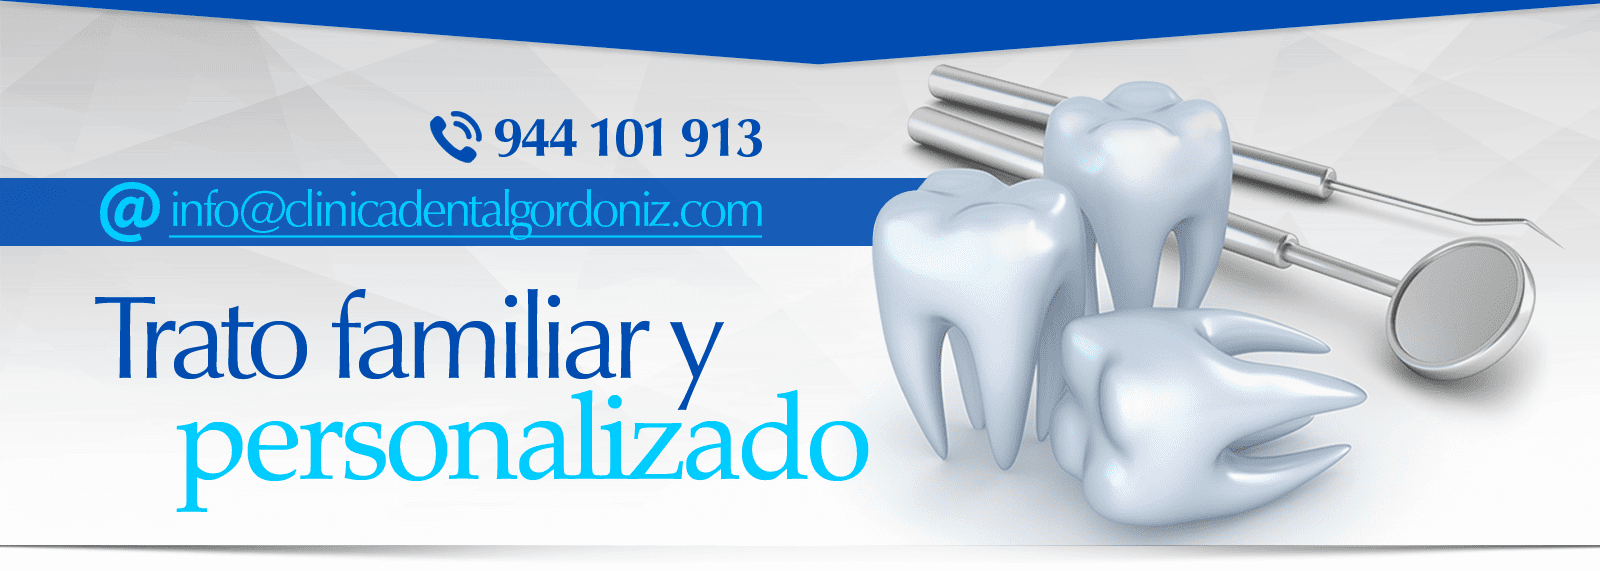 Clínica Dental Gordoniz banner